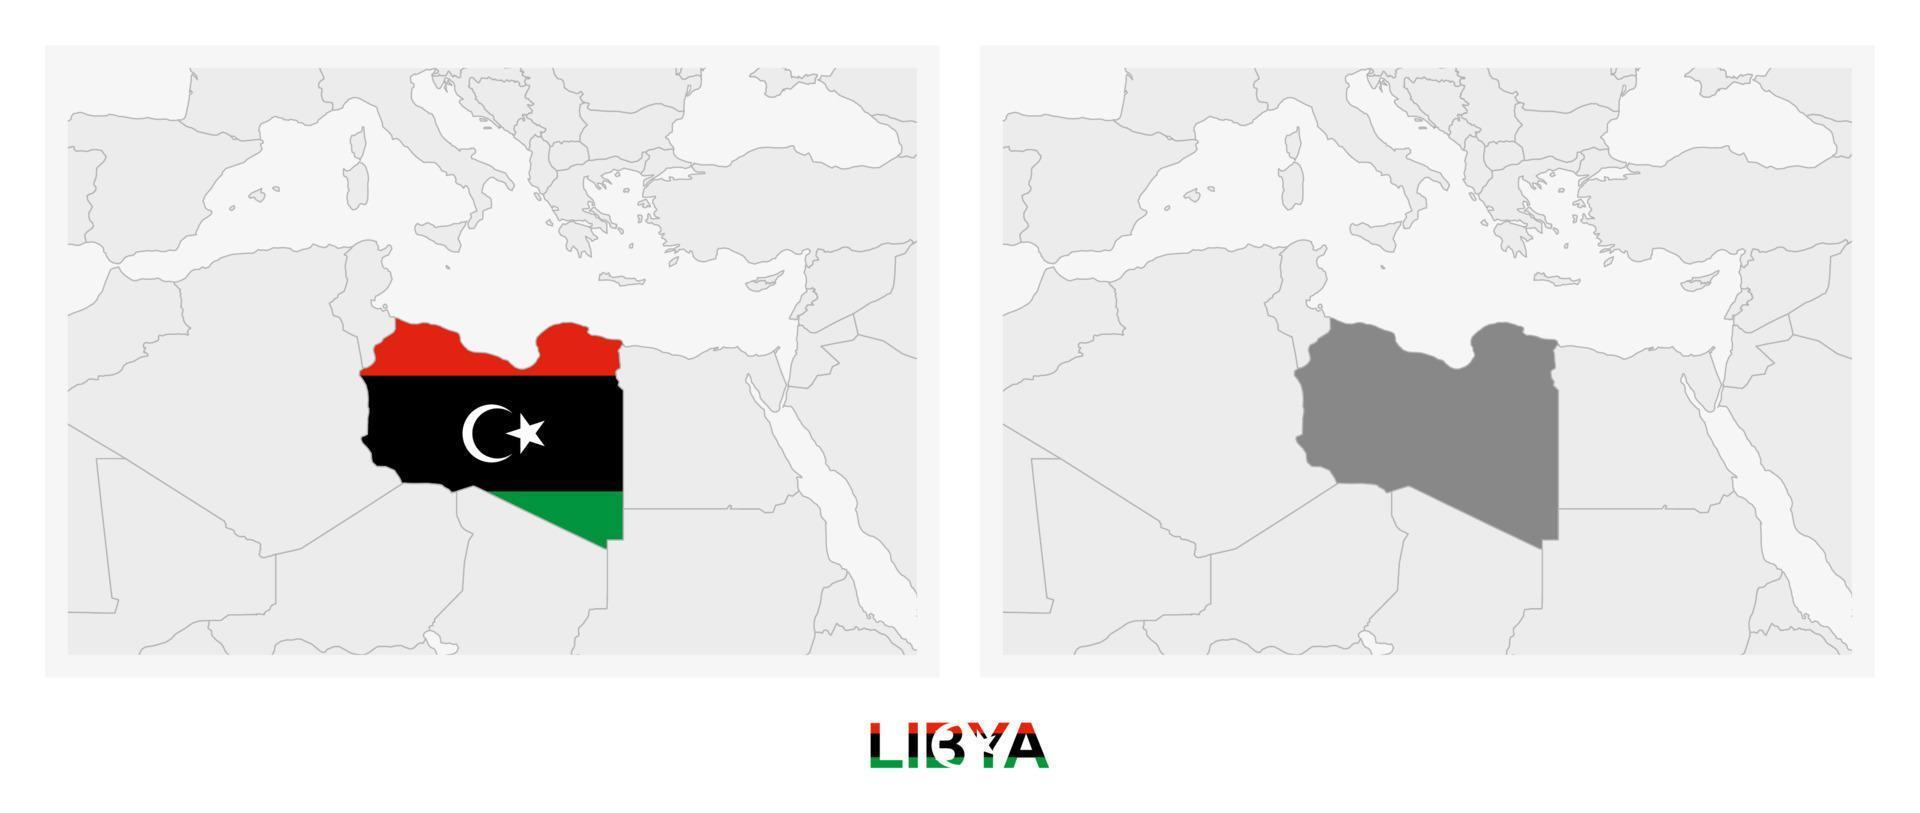 dos versiones del mapa de libia, con la bandera de libia y resaltada en gris oscuro. vector